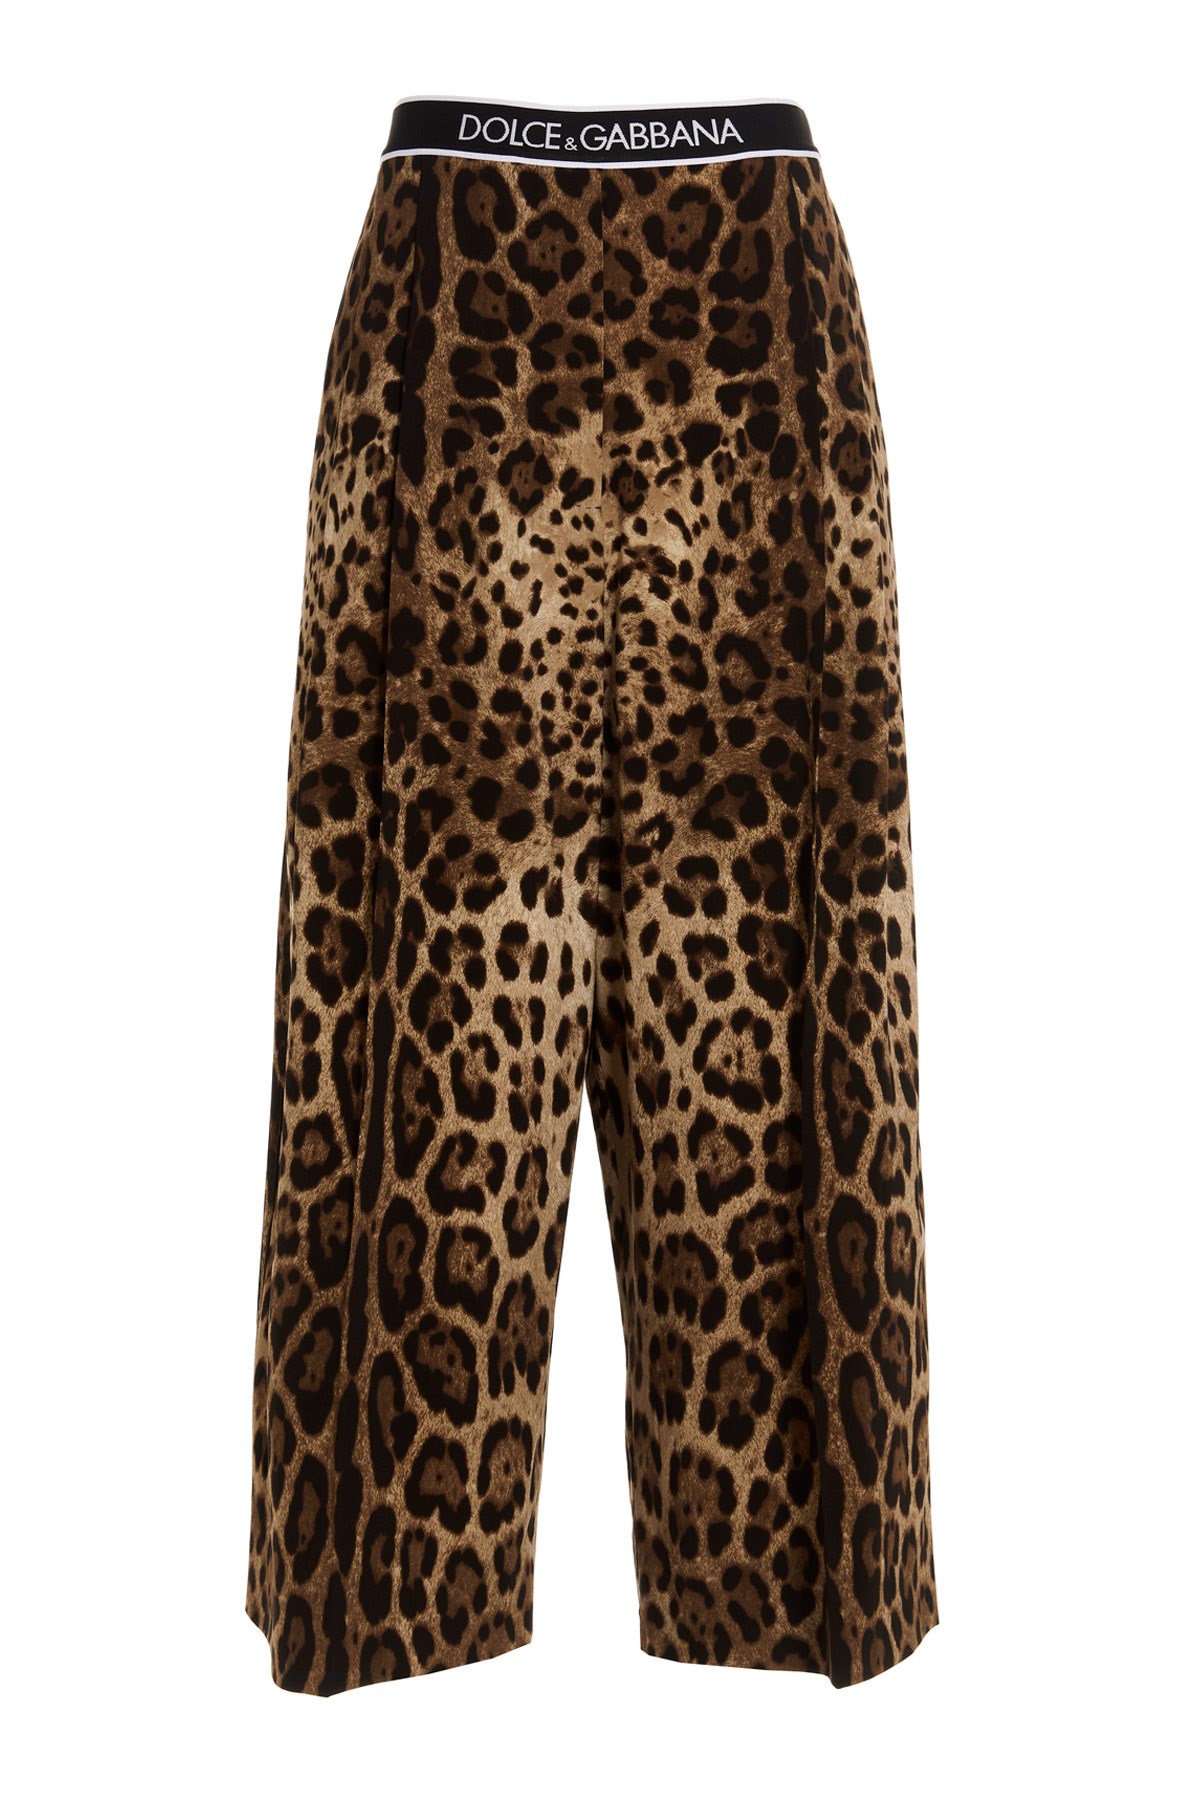 DOLCE & GABBANA Leopard Print Skirt